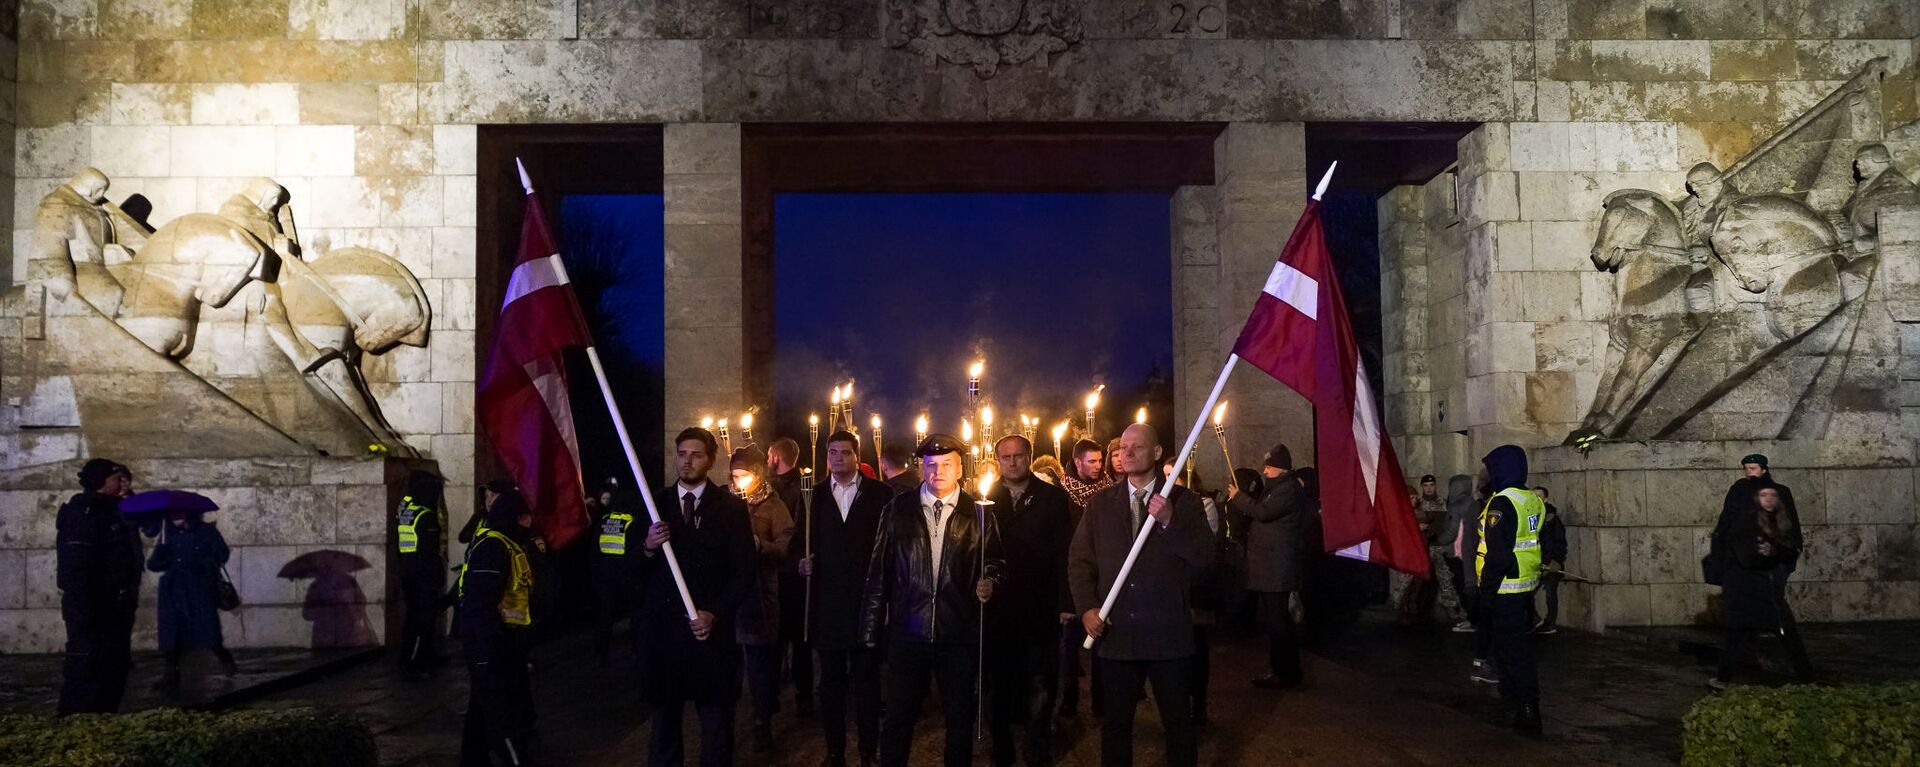 В День Лачплесиса в Риге состоялось факельное шествие - Sputnik Latvija, 1920, 11.11.2020